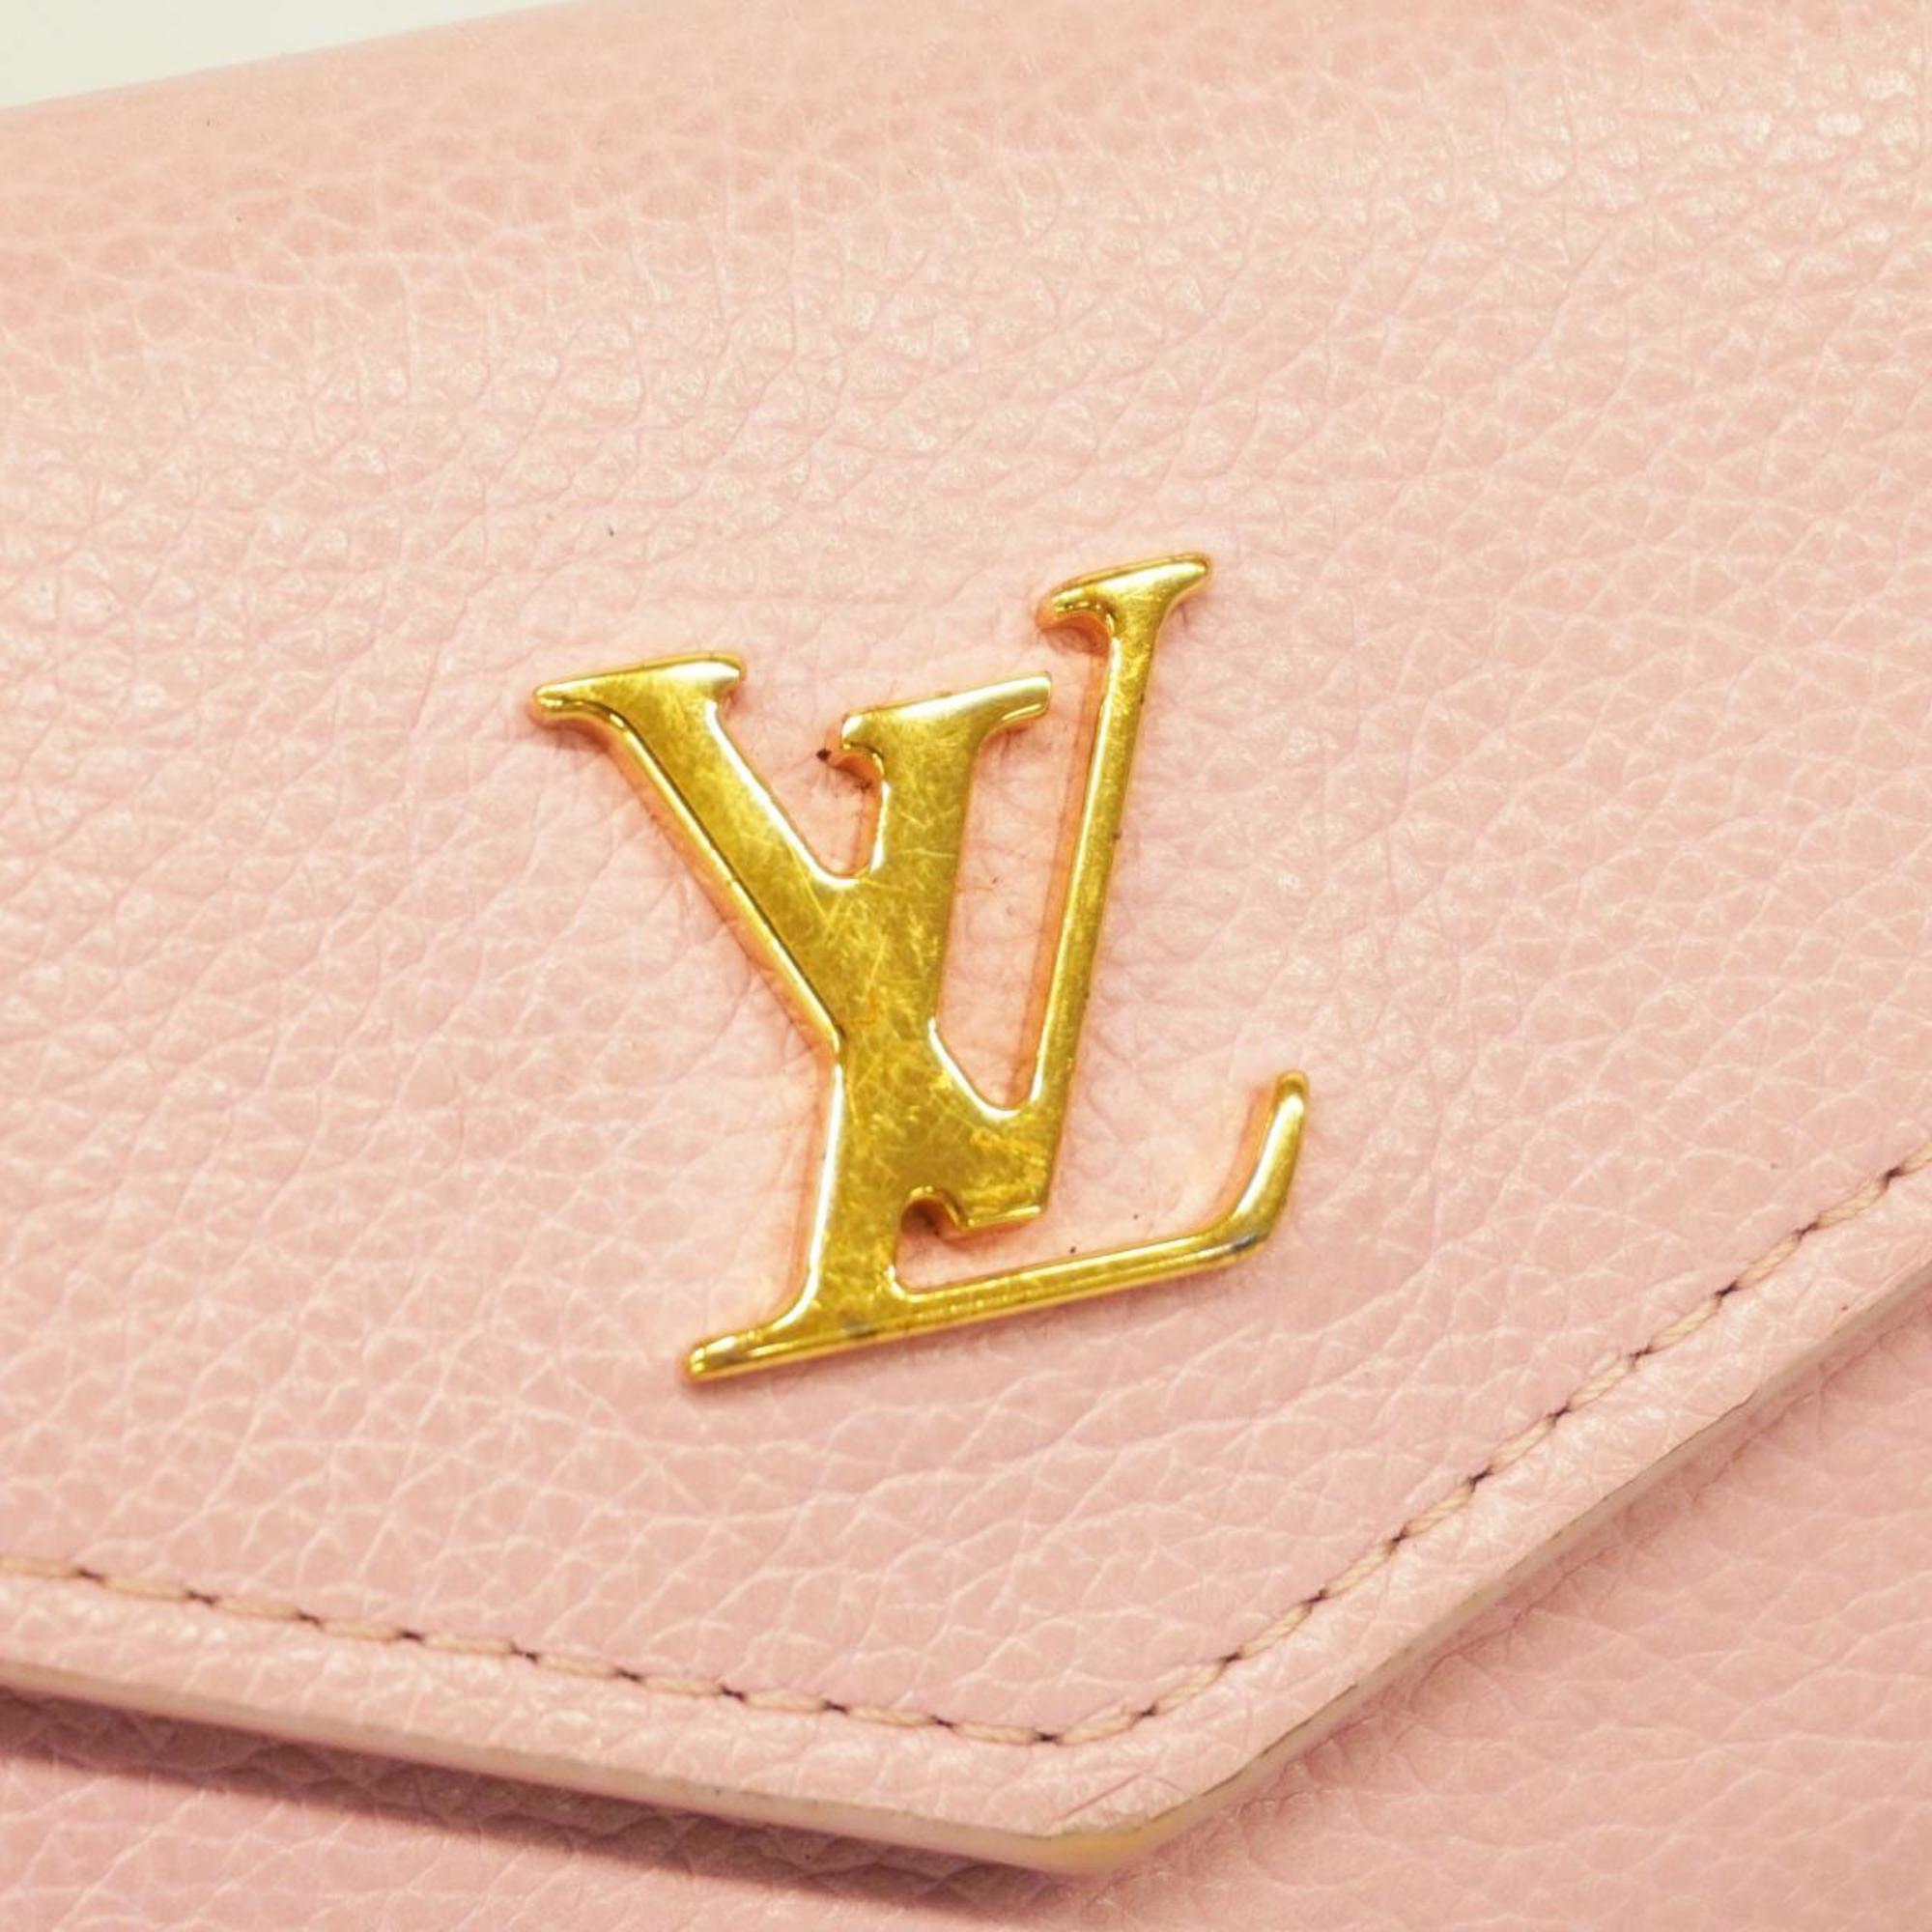 ルイ・ヴィトン(Louis Vuitton) ルイ・ヴィトン 三つ折り財布 ポルトフォイユロック M80088 ピンク 日限定レディース